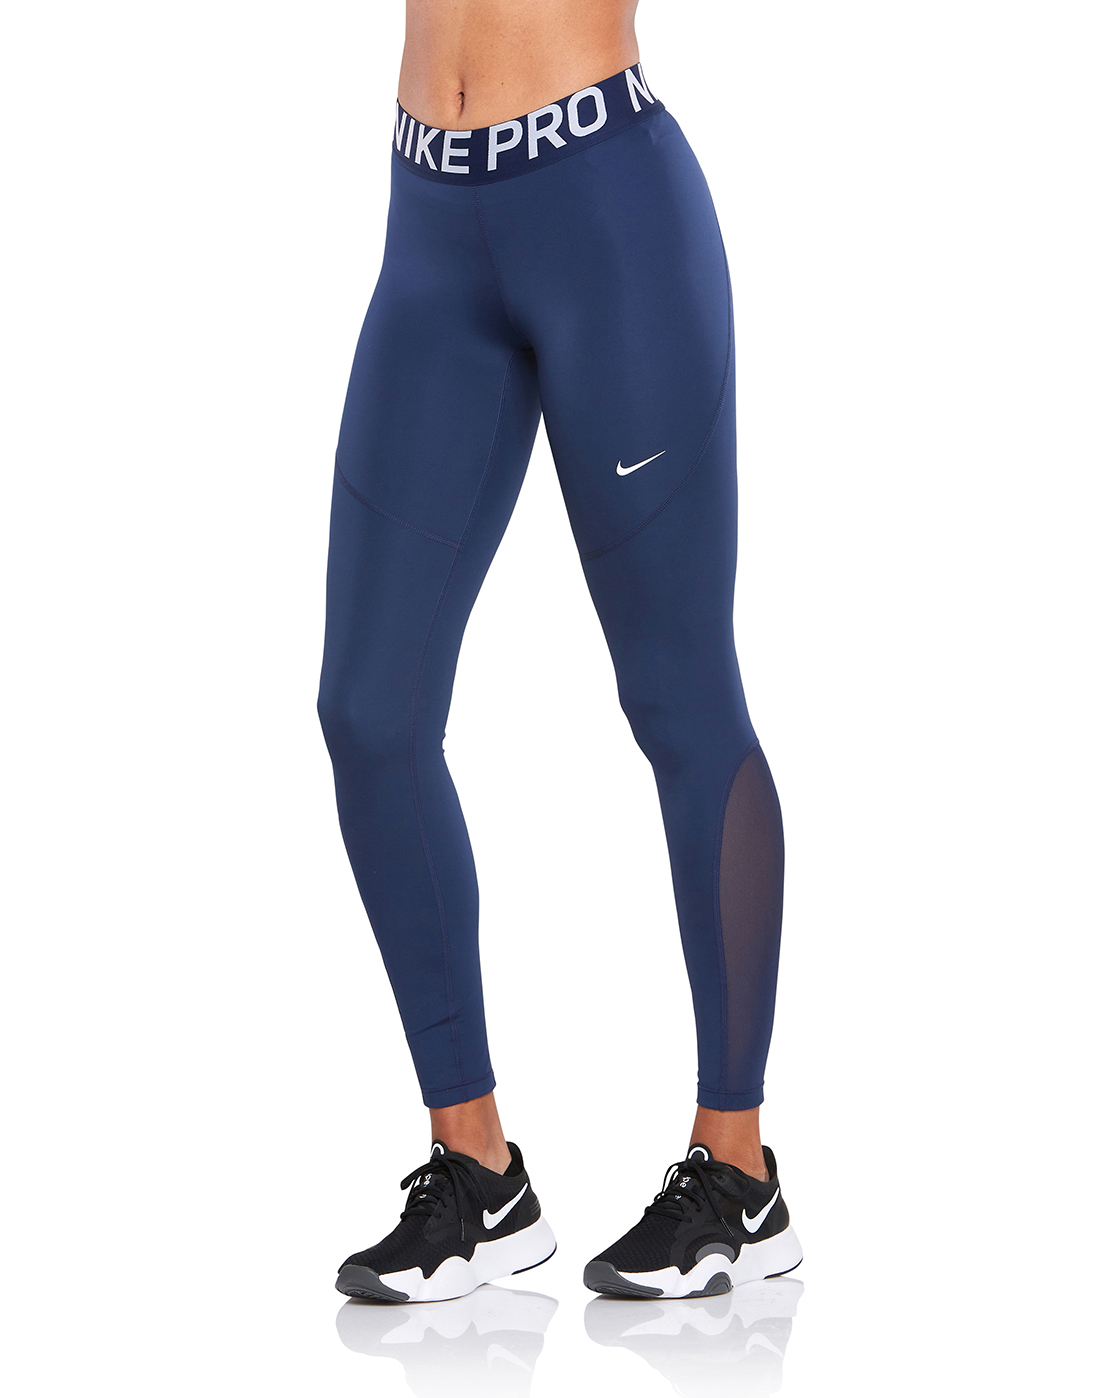 navy blue nike pro leggings